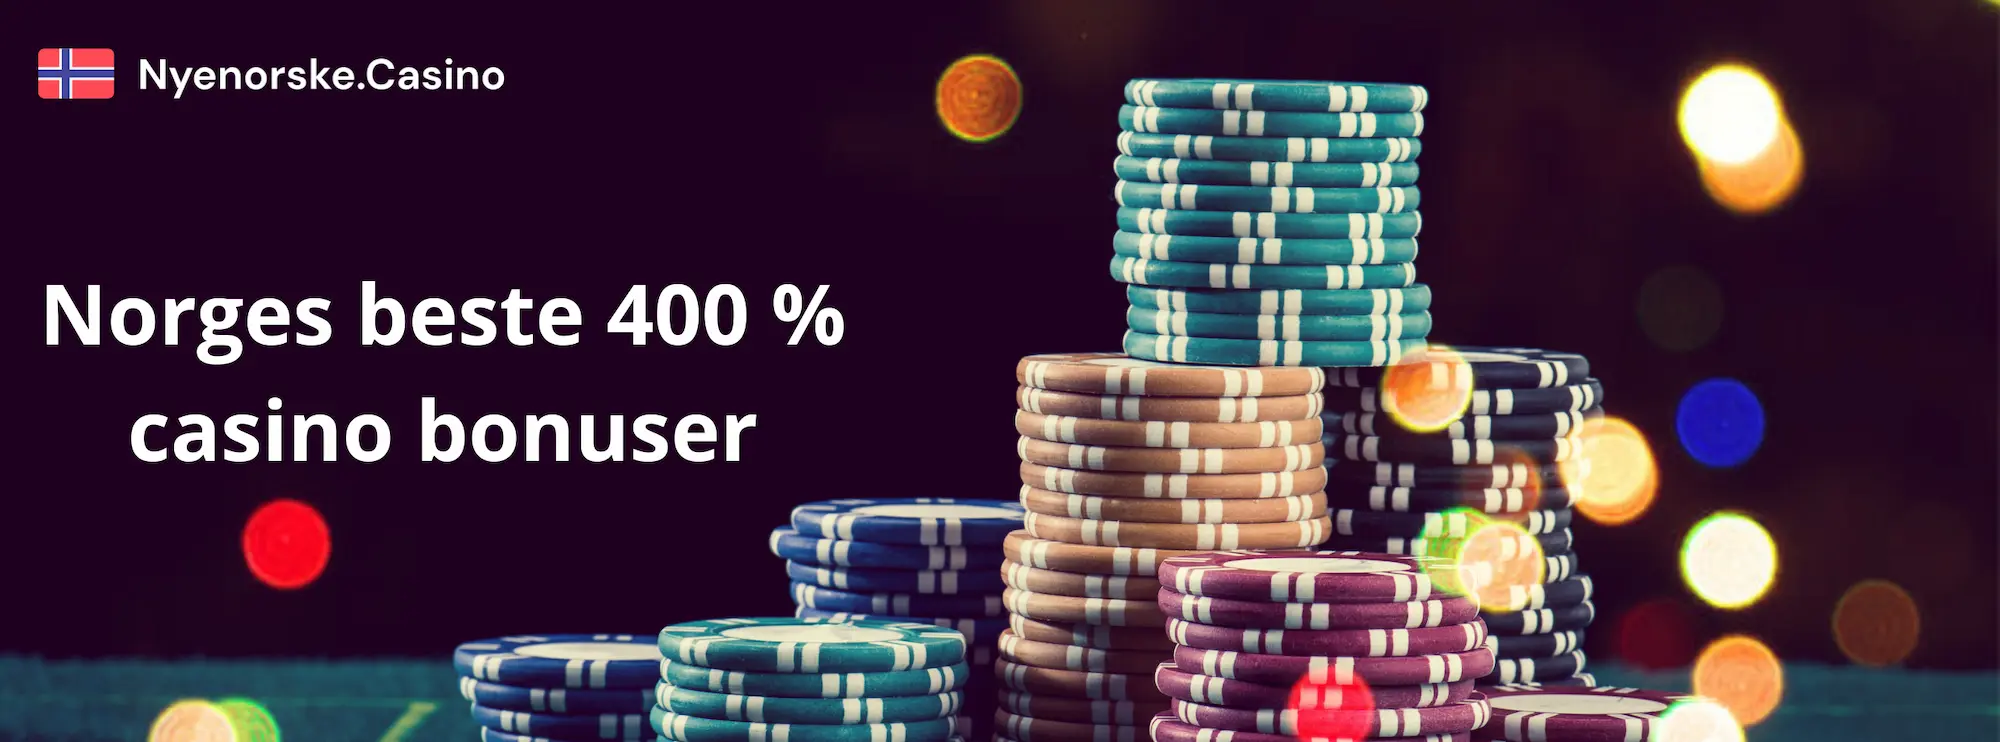 Hva er 400% casino bonus?